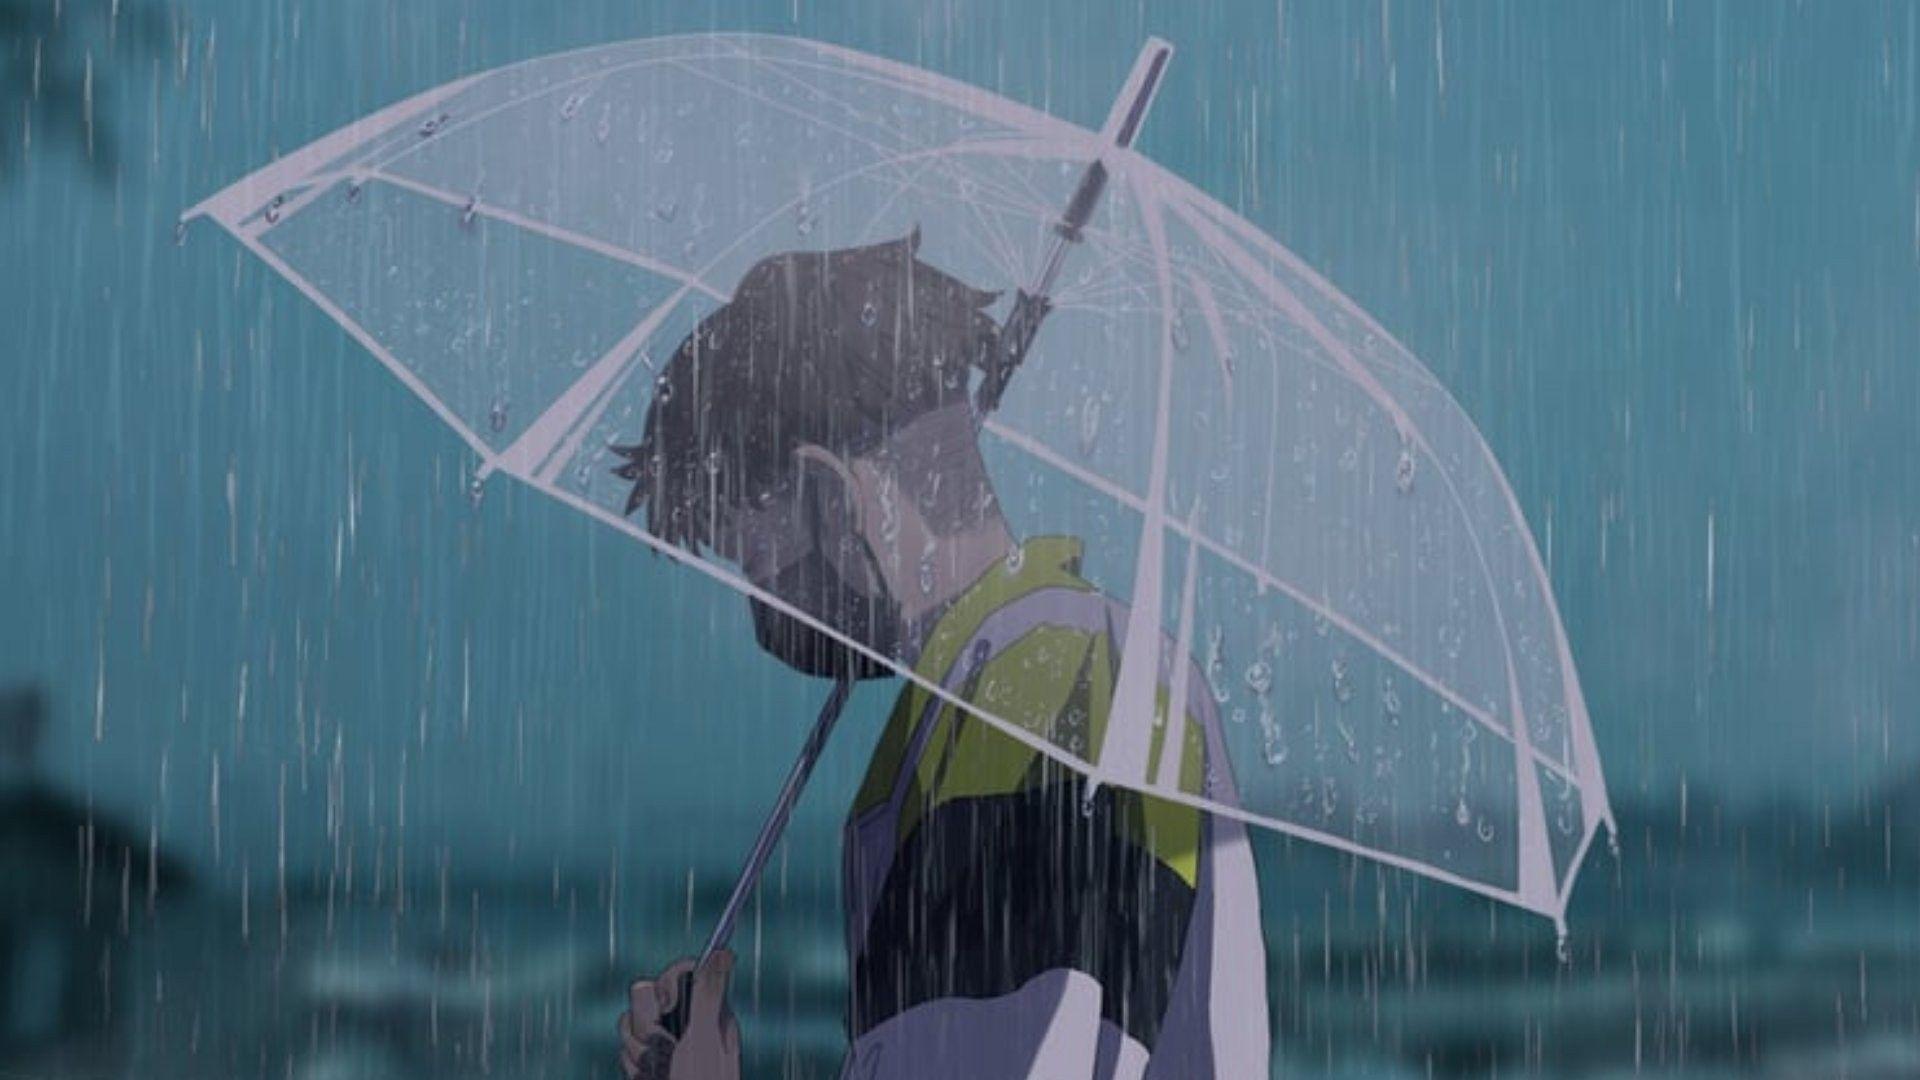 100+] Rain Anime Wallpapers | Wallpapers.com